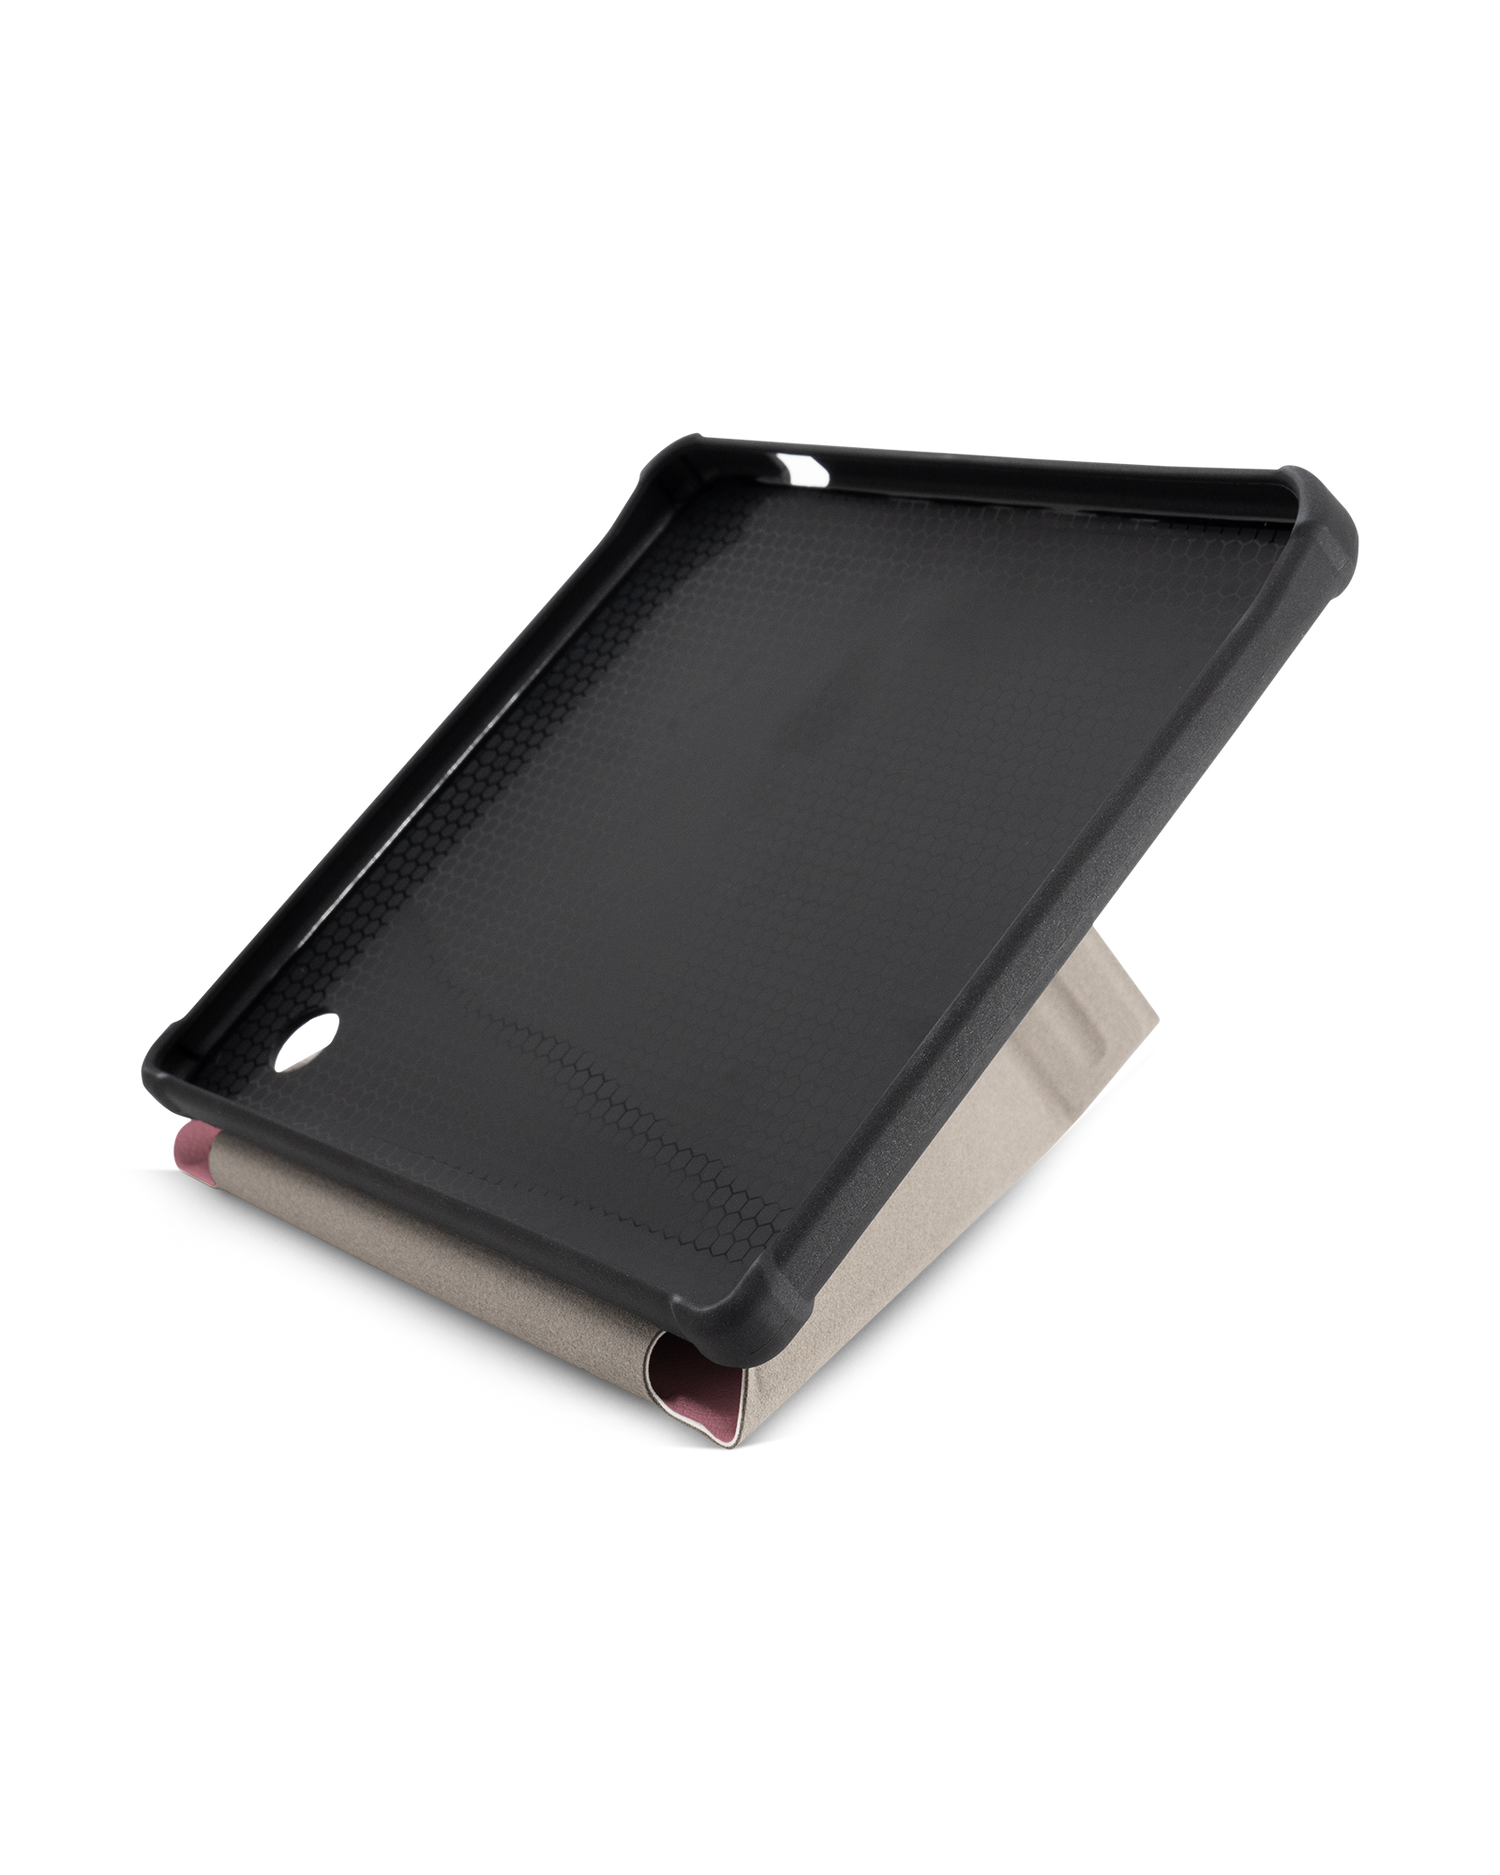 WILD ROSE eBook-Reader Smart Case für tolino vision 5 (2019): Aufgestellt im Querformat Innenansicht